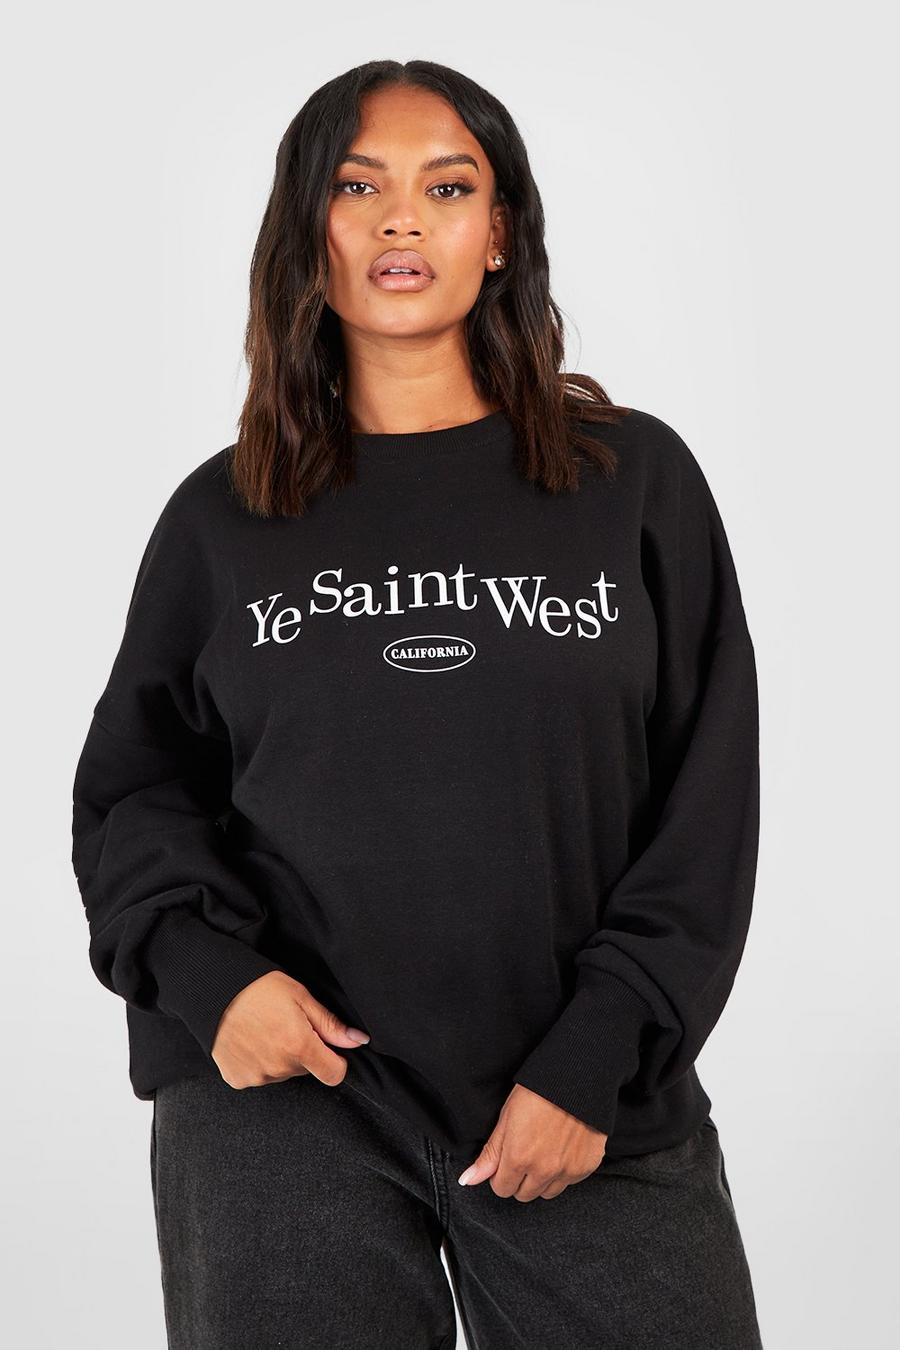 Plus Sweatshirt mit Ye Saint West Print, Schwarz black